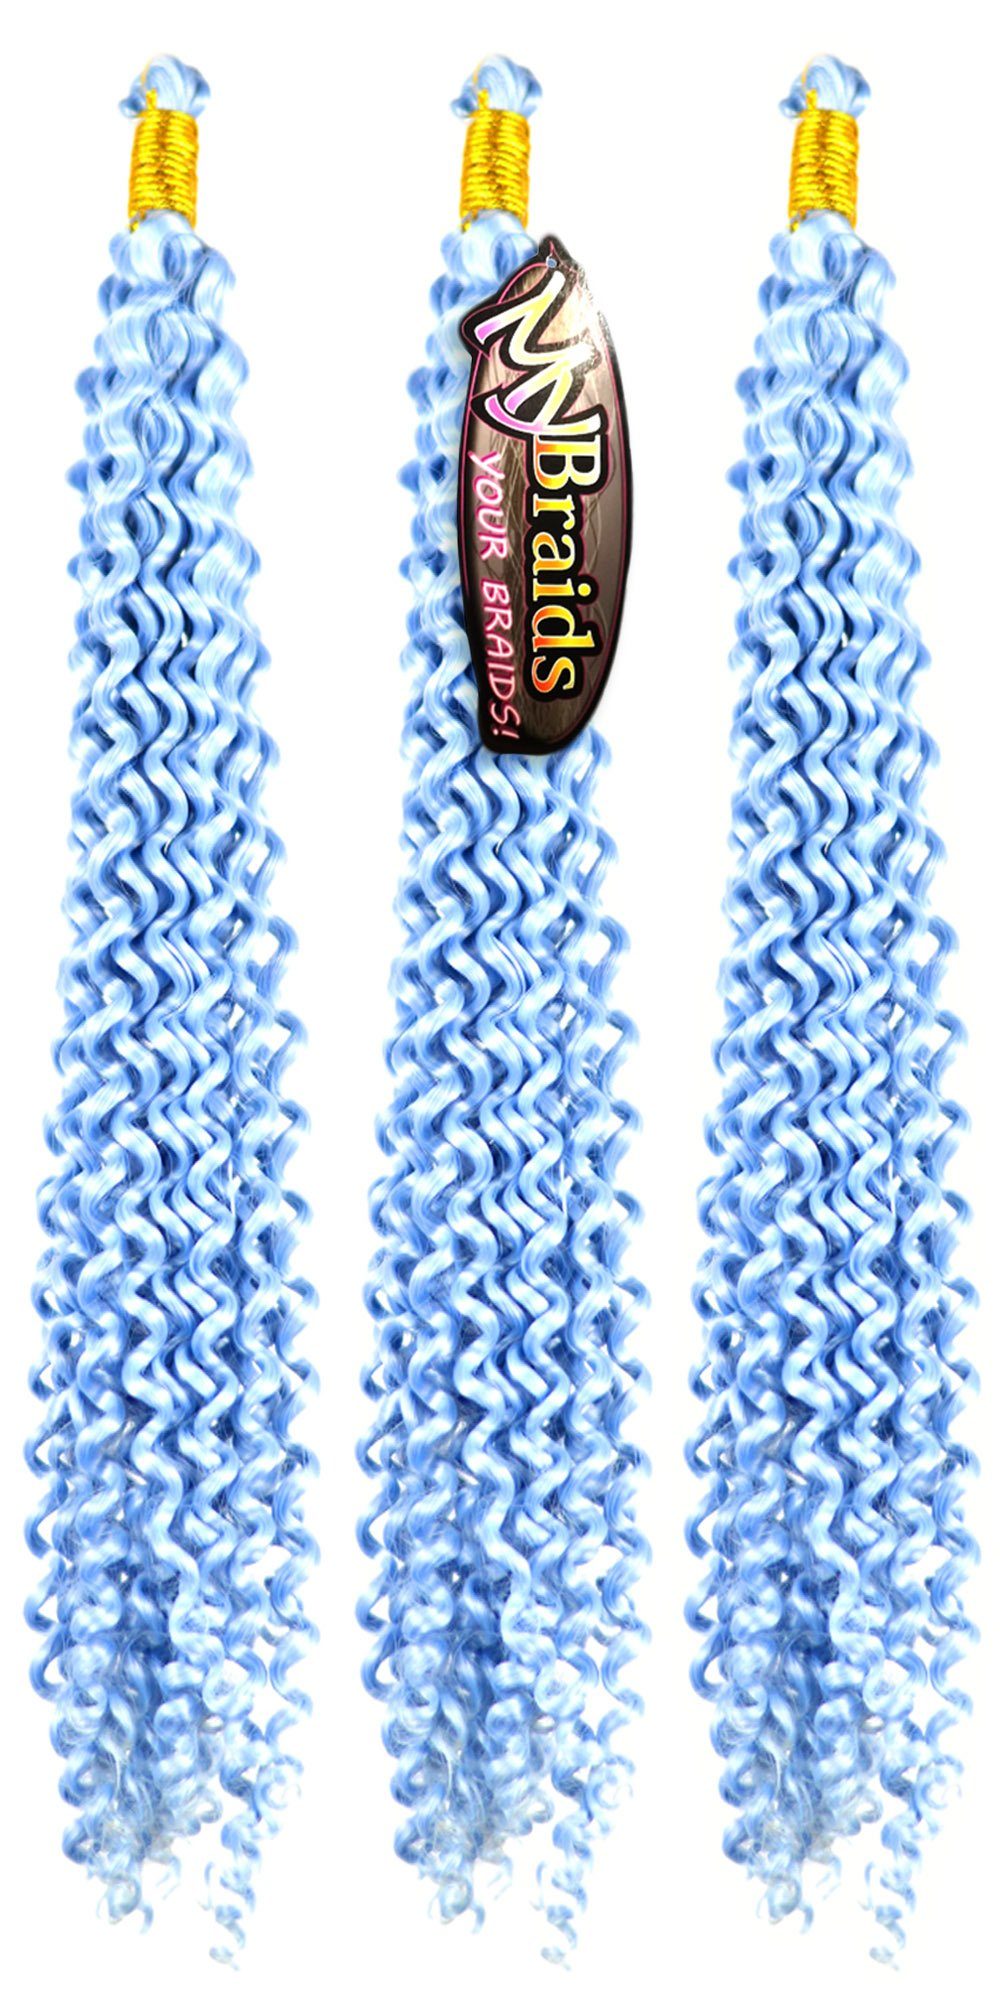 MyBraids YOUR BRAIDS! Zöpfe Wellig Flechthaar Crochet Silberblau Pack 3er Kunsthaar-Extension 17-W Wave Braids Deep